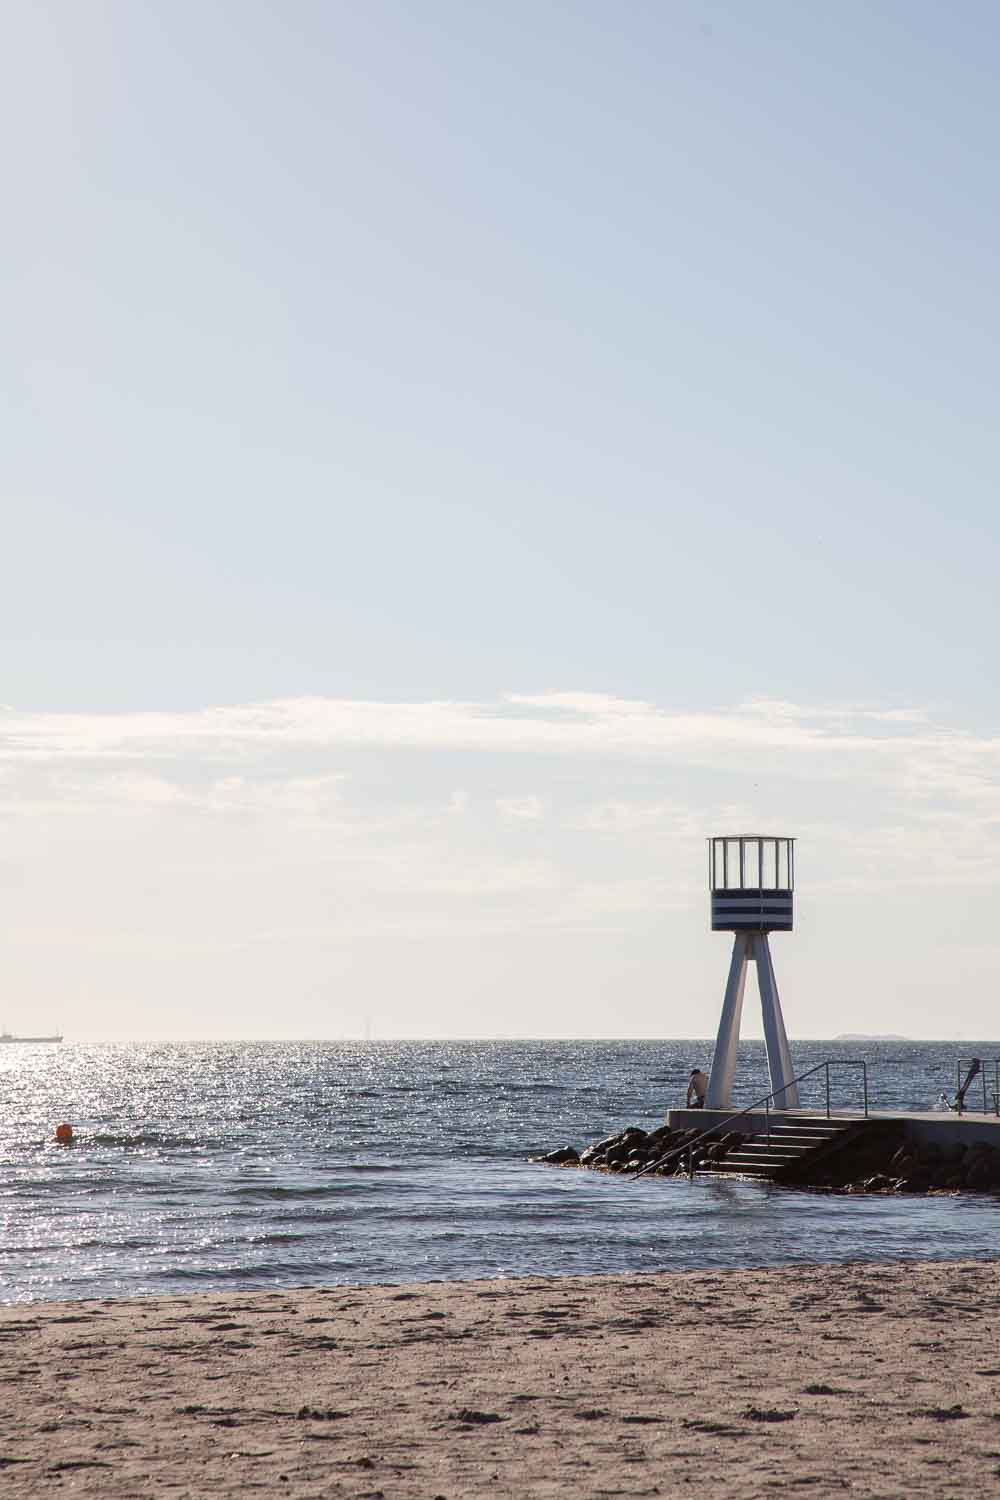 Inkunabel modernistischer Architektur. Arne Jacobsen gestaltete den Rettungsturm für ein Strandbad vor Kopenhagen.